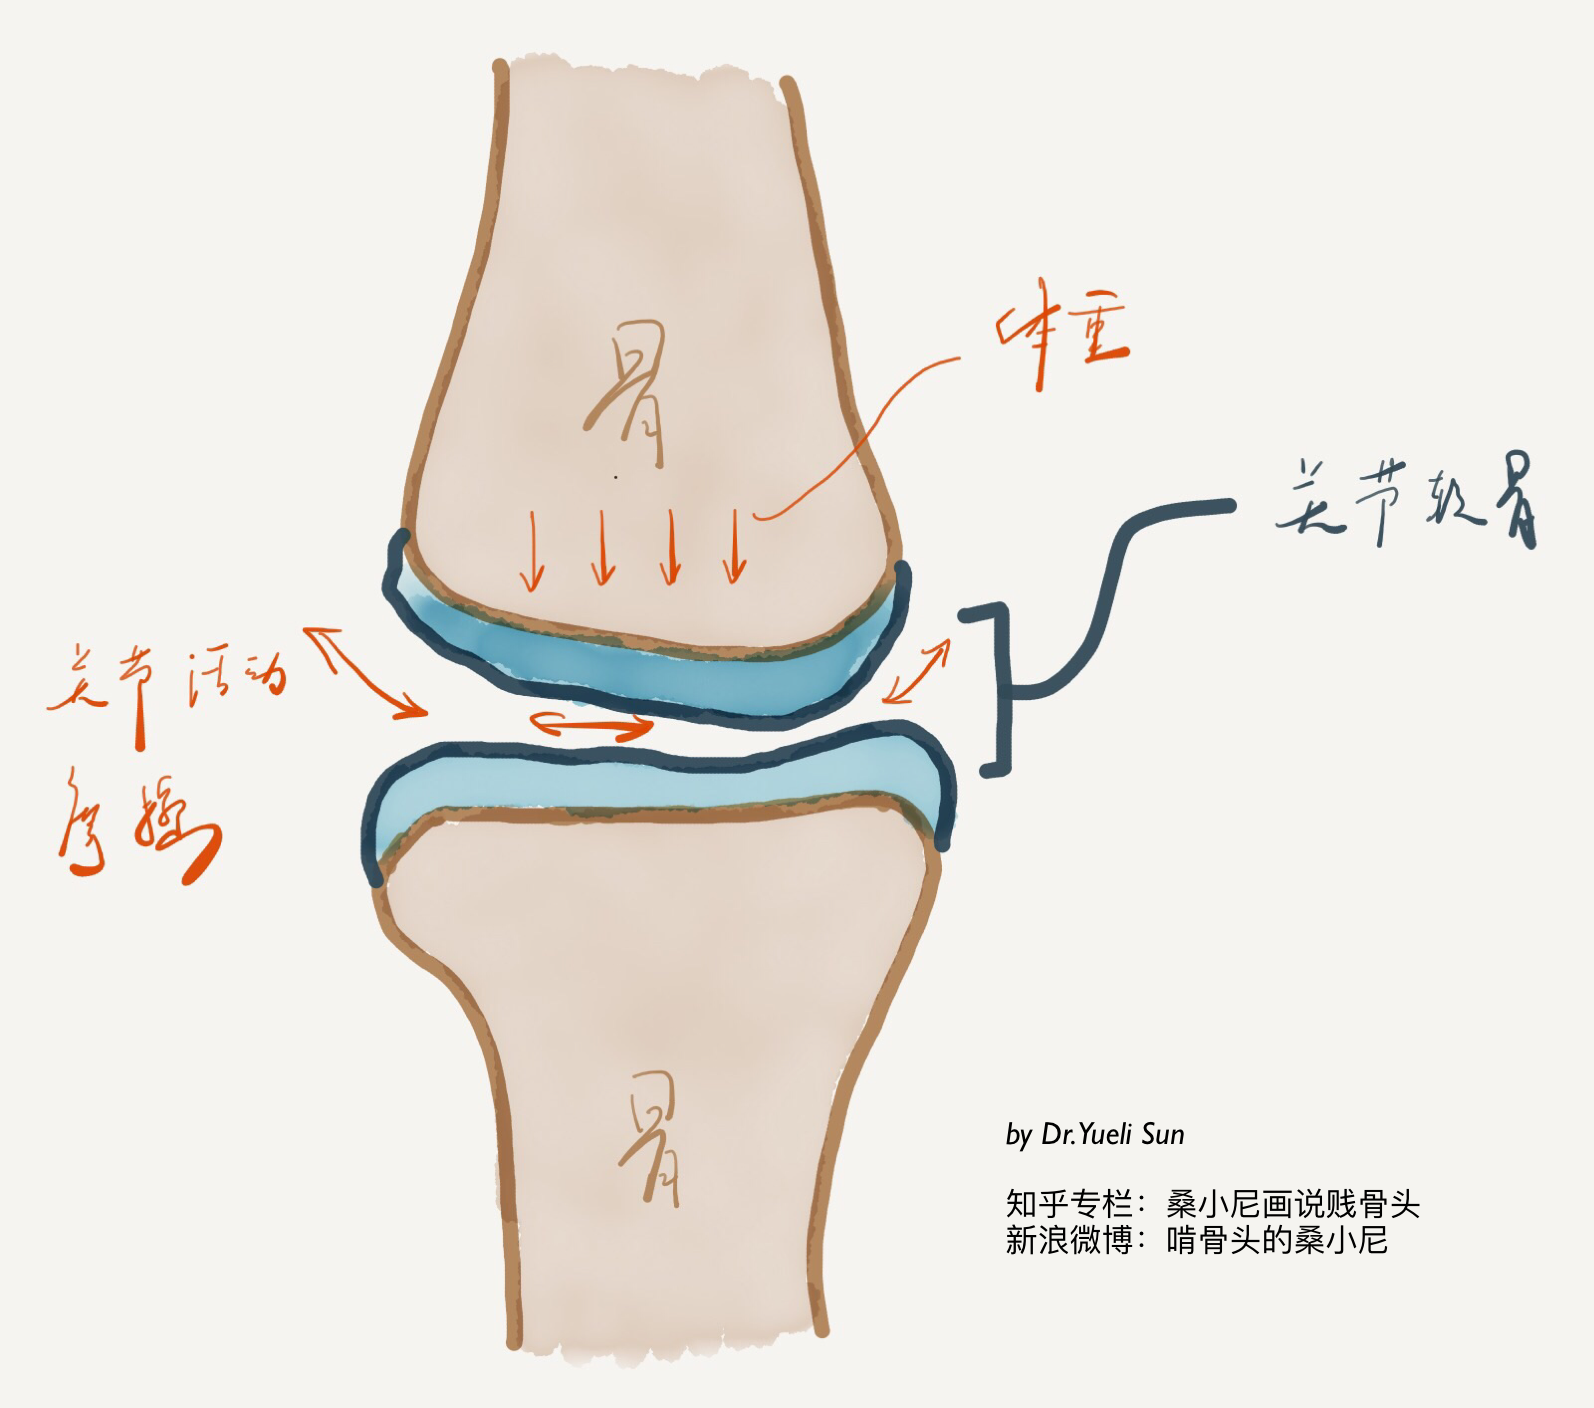 重新认识「膝骨关节炎」——手绘插图多到爆炸的一期Live文字整理稿 - 知乎